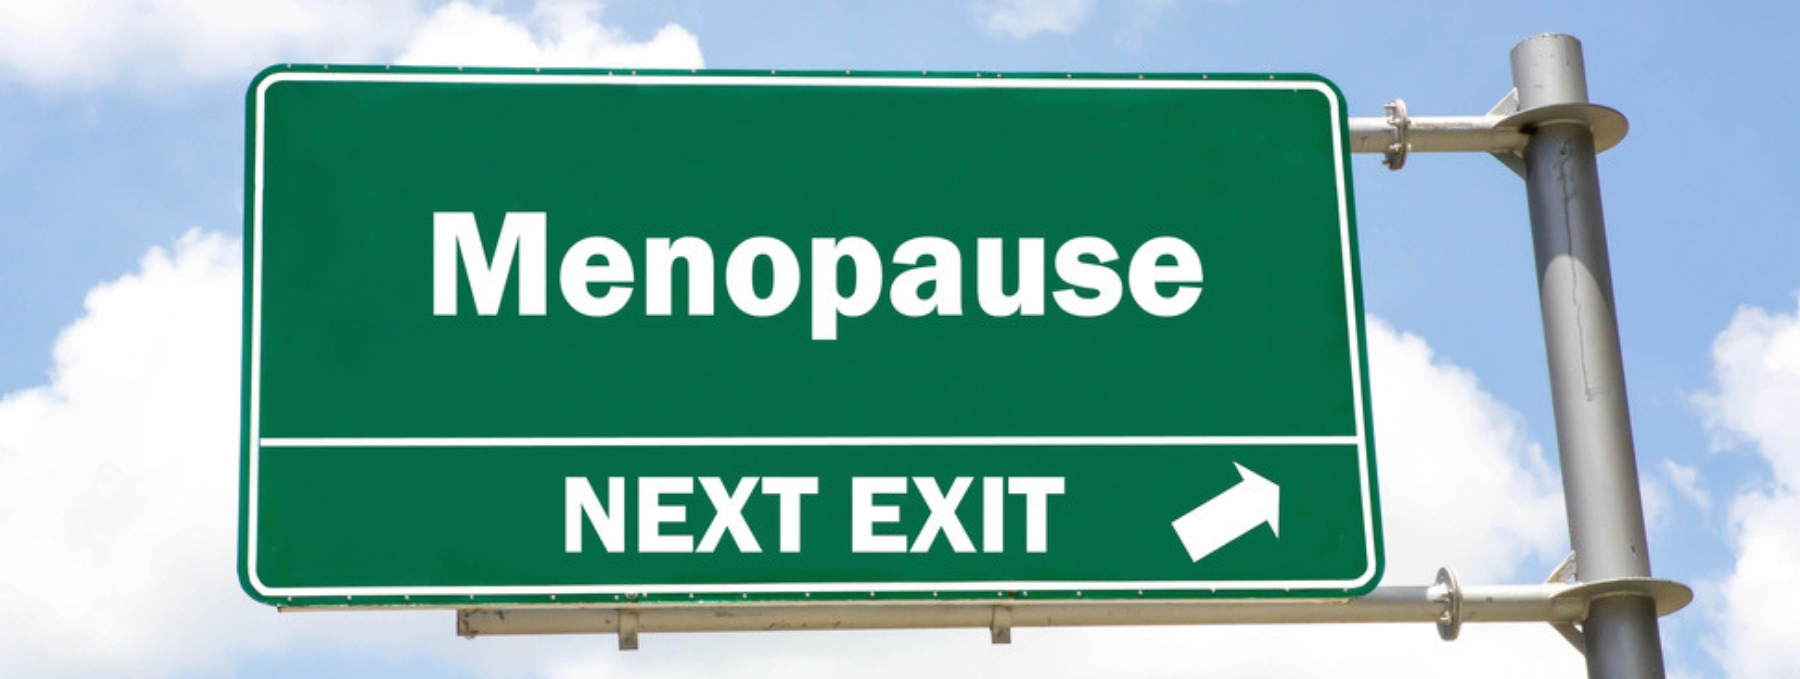 Bestimmte Lebensstilfaktoren erhöhen das Risiko von Hitzewallungen in der Menopause